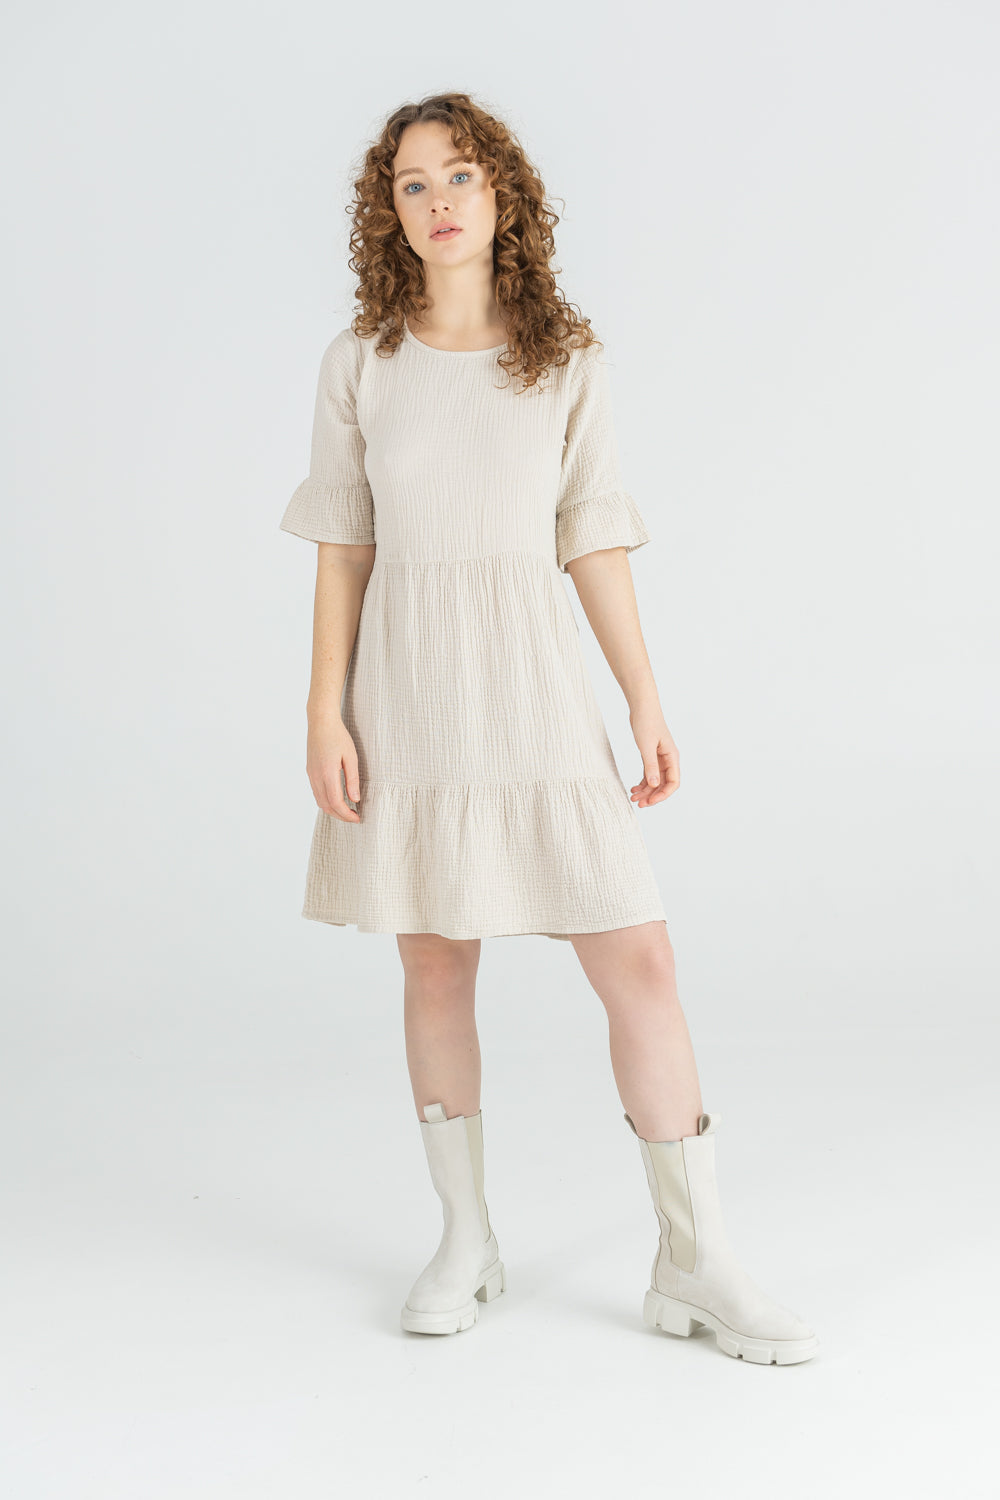 Musselin Kleid 100% Bio-Baumwolle von SOM aus Münster